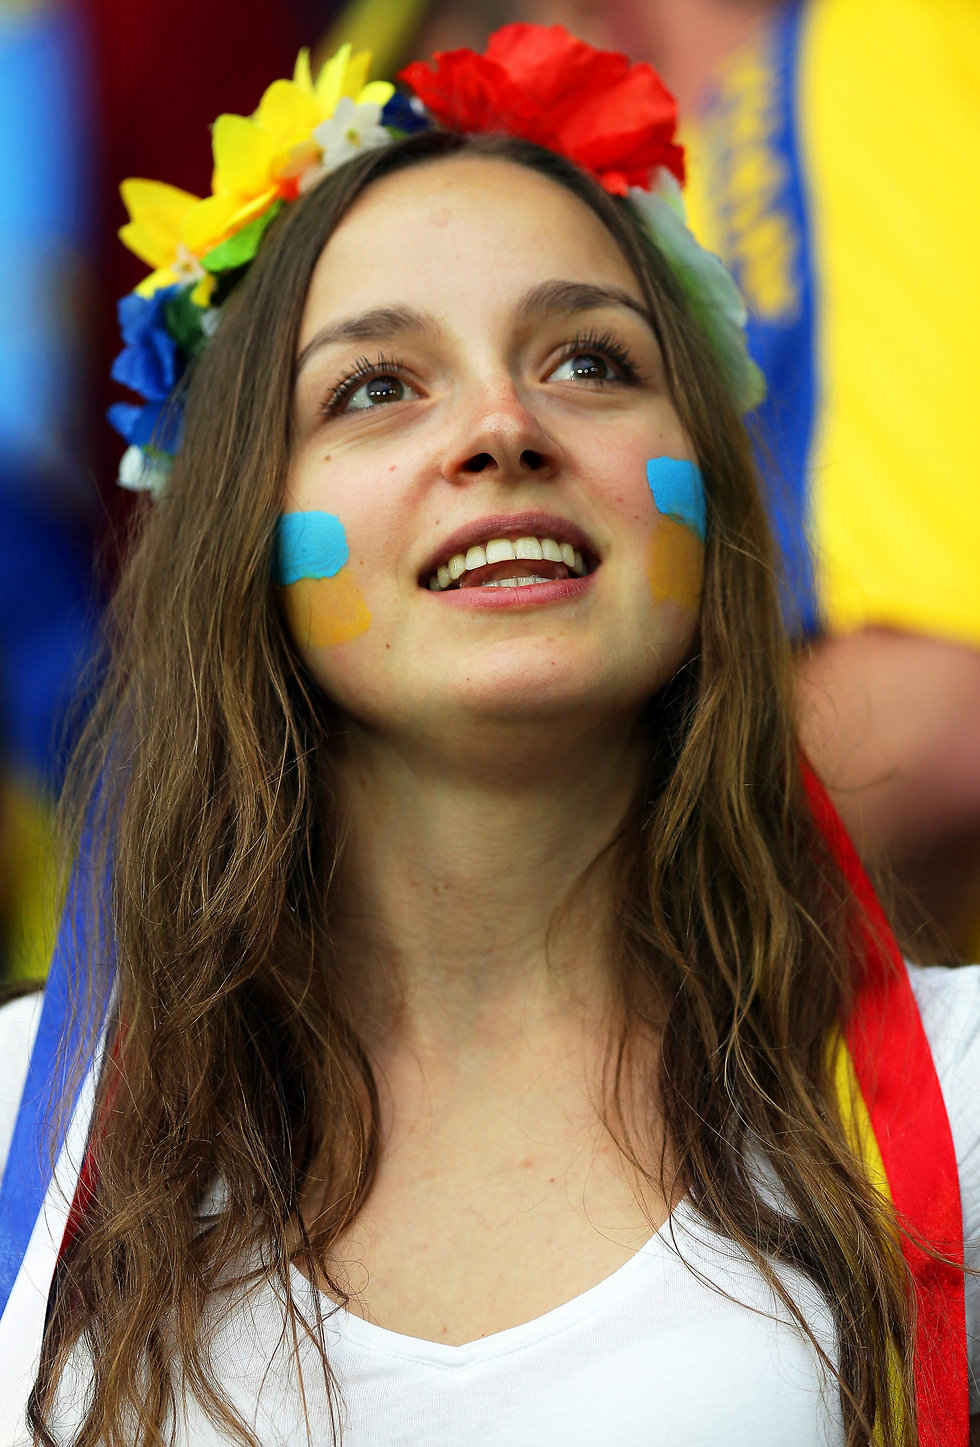 אוקראינה, לא רוסיה (צילום: אי פי איי) (צילום: אי פי איי)